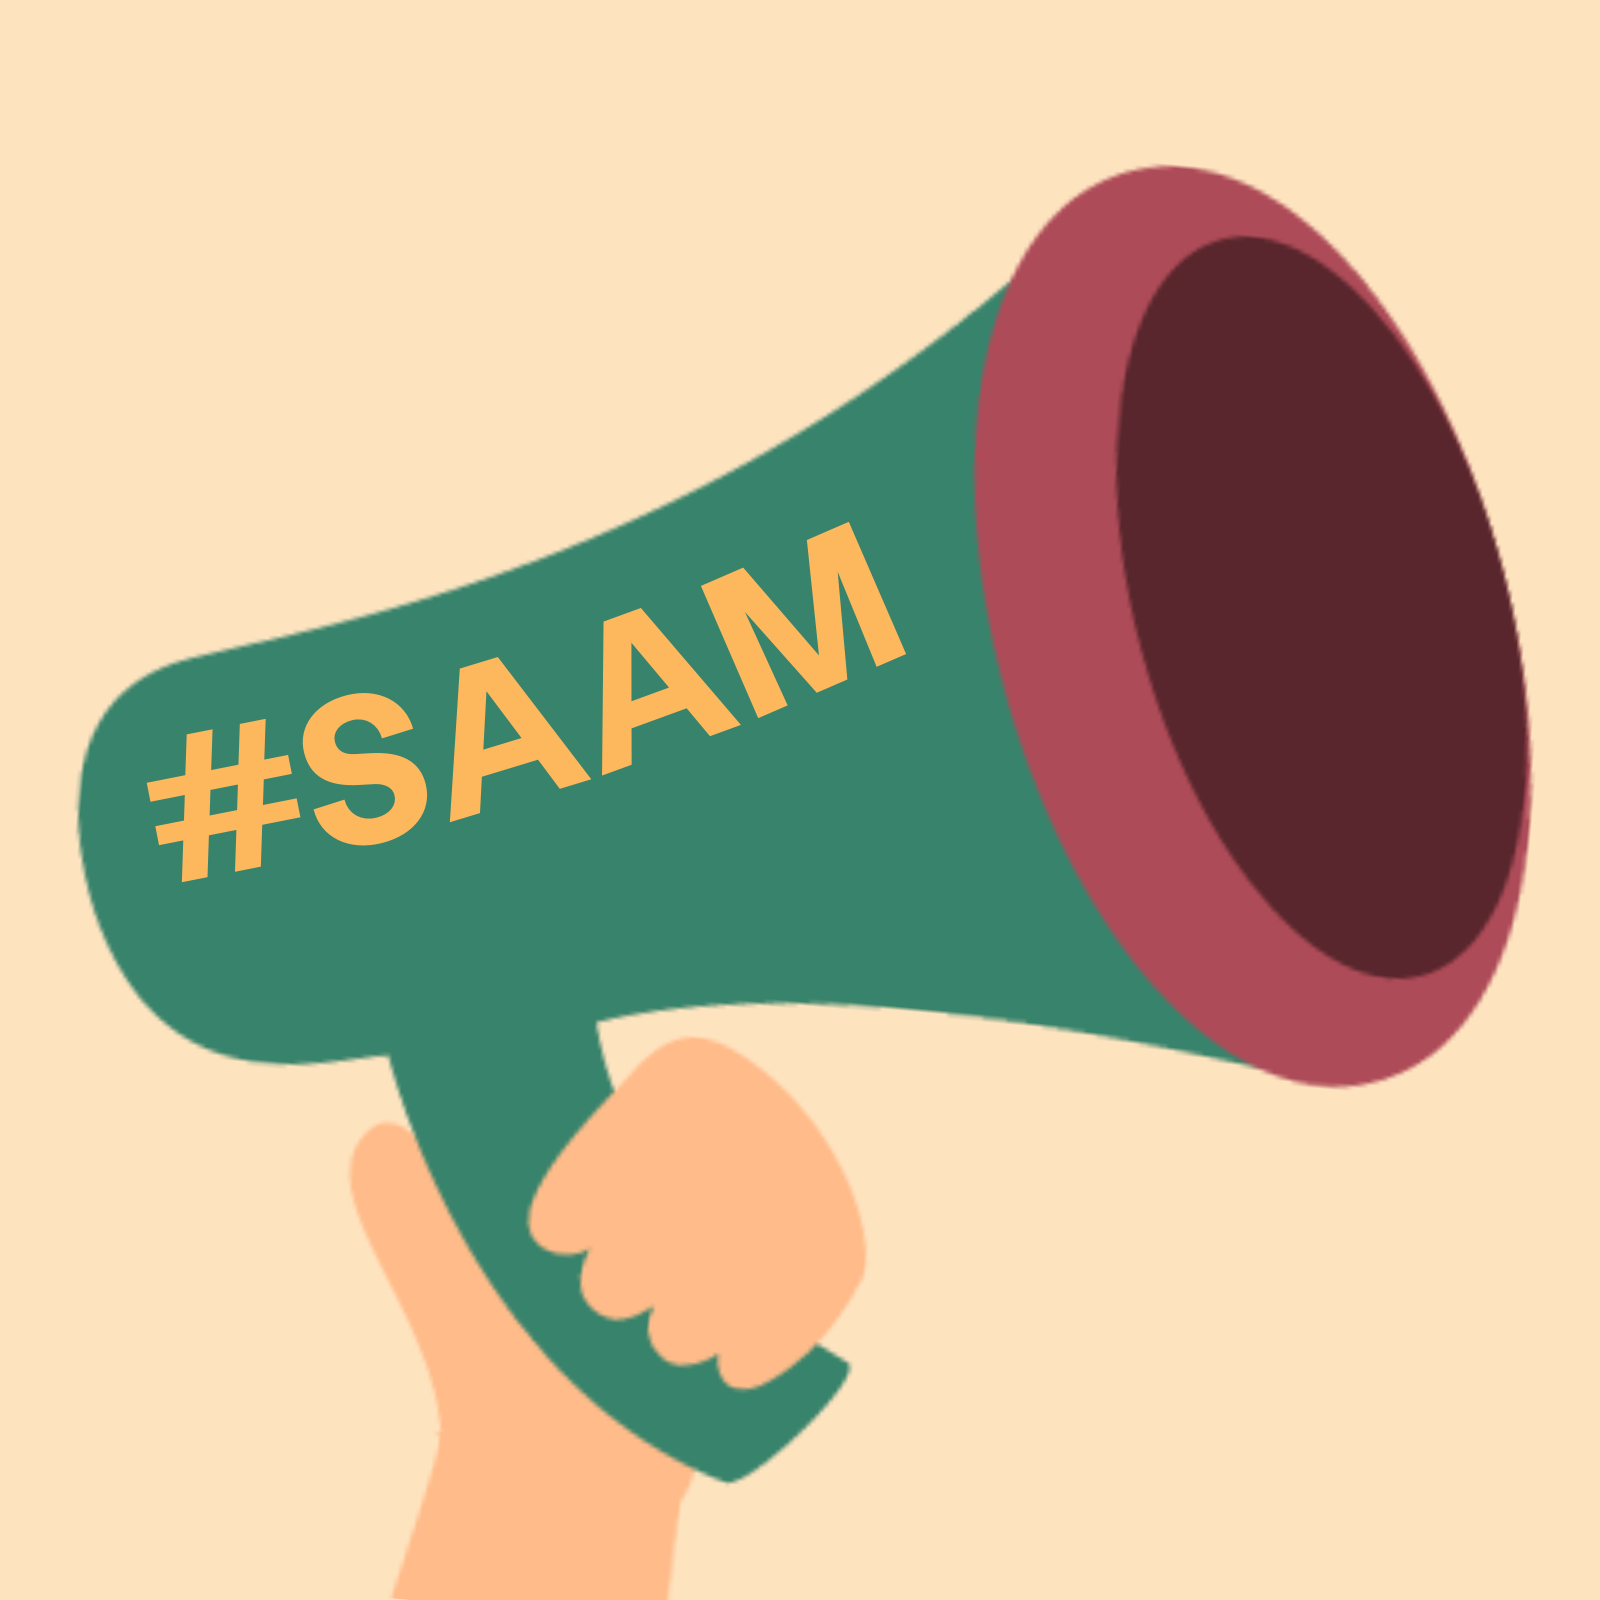 Рука держит зеленый мегафон с красной окантовкой и надписью #SAAM сбоку.